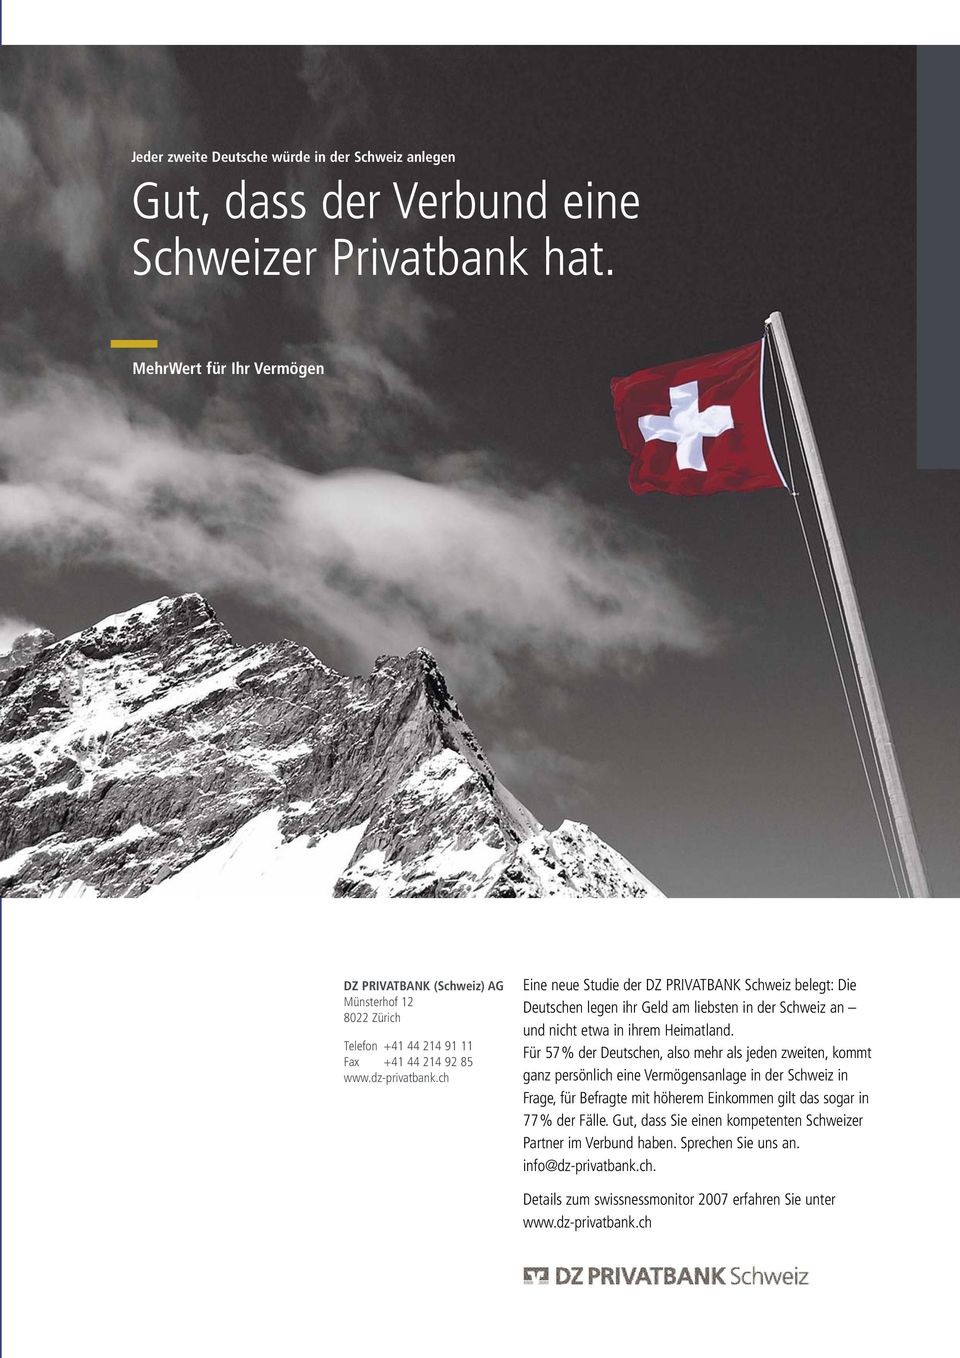 ch Eine neue Studie der DZ PRIVATBANK Schweiz belegt: Die Deutschen legen ihr Geld am liebsten in der Schweiz an und nicht etwa in ihrem Heimatland.